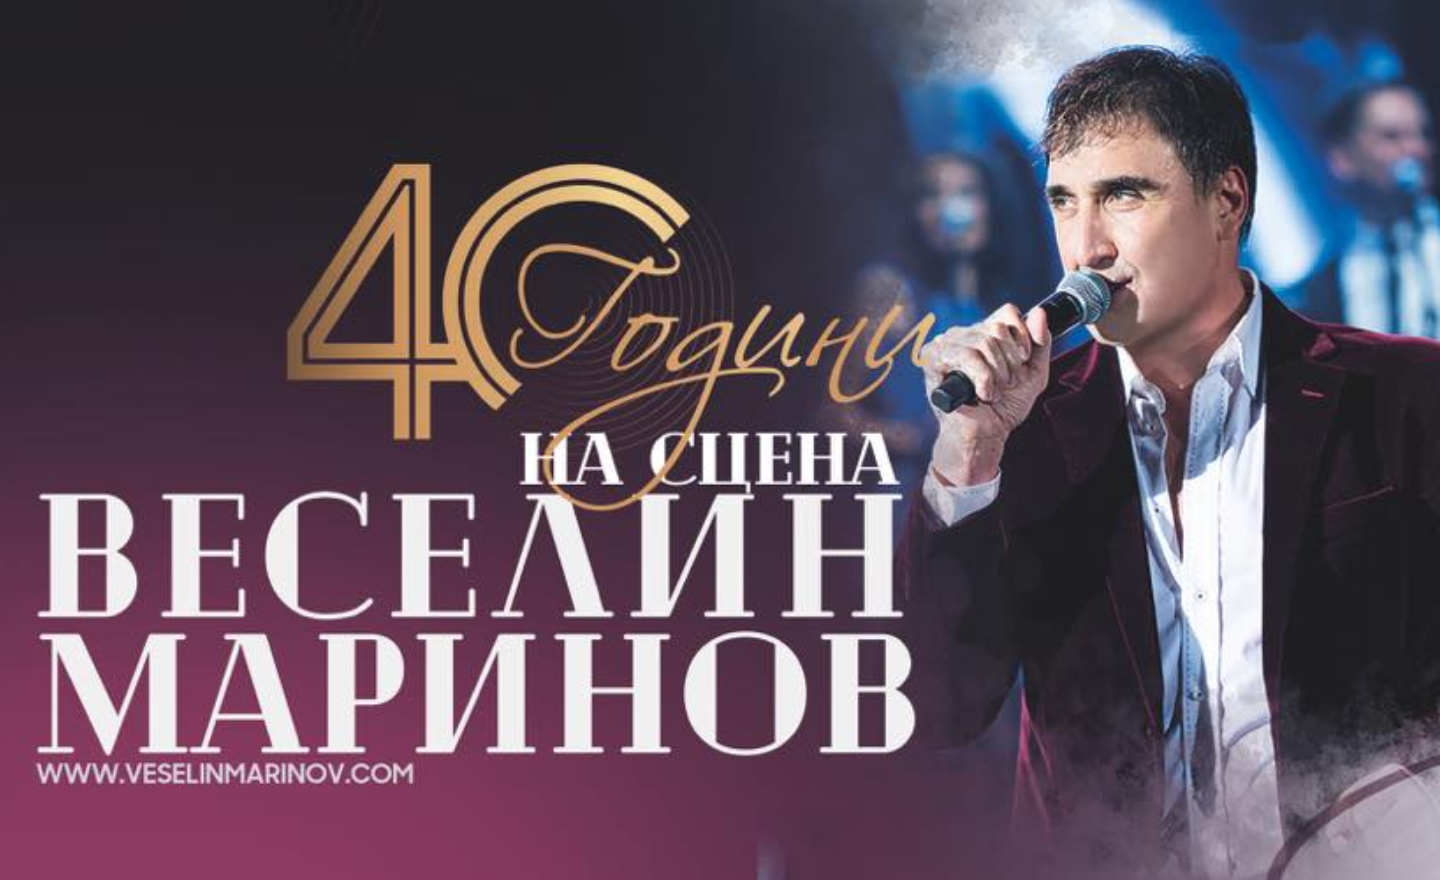 Веселин Маринов с Лятно турне “40 години на сцена”